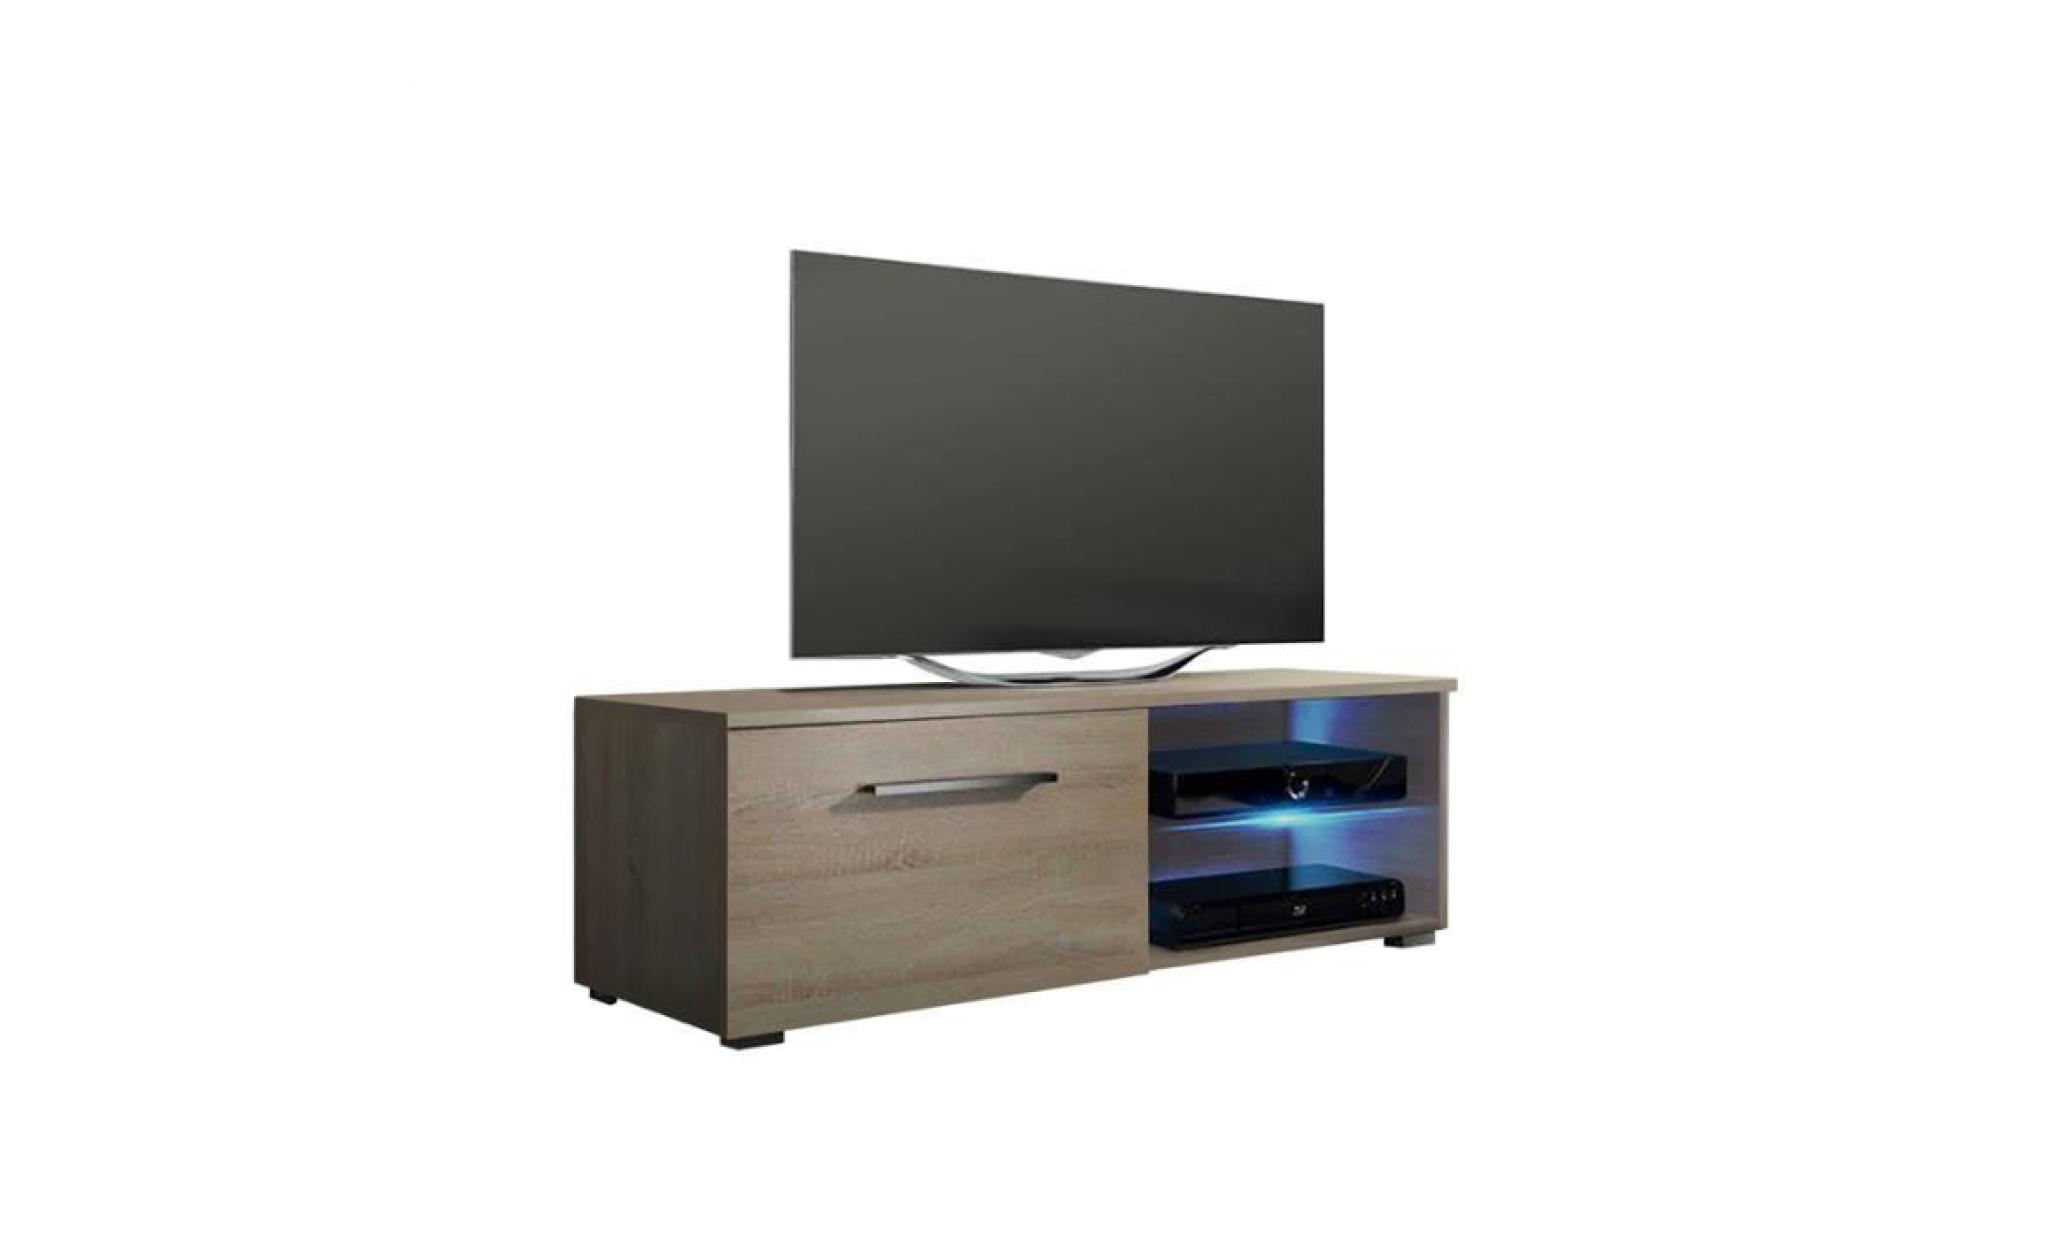 meuble tv / meuble salon   tenus single   100 cm   effet chêne   avec led   2 compartiments ouverts   style classique pas cher